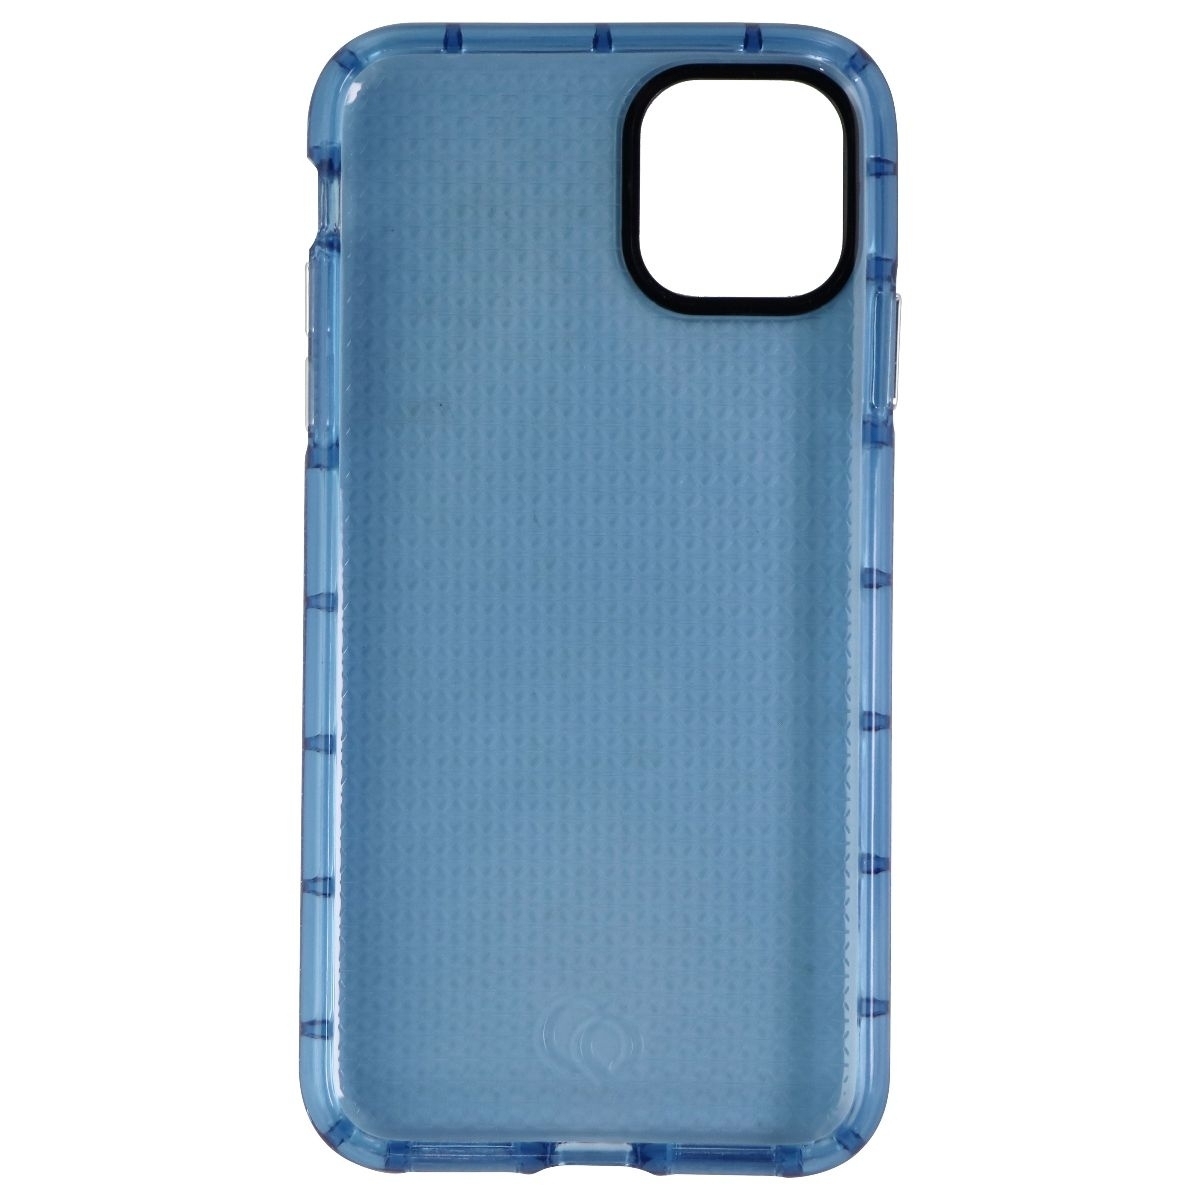 Nimbus9 Phantom 2 Series Case For Apple IPhone 11 Pro Max - Pacific Blue